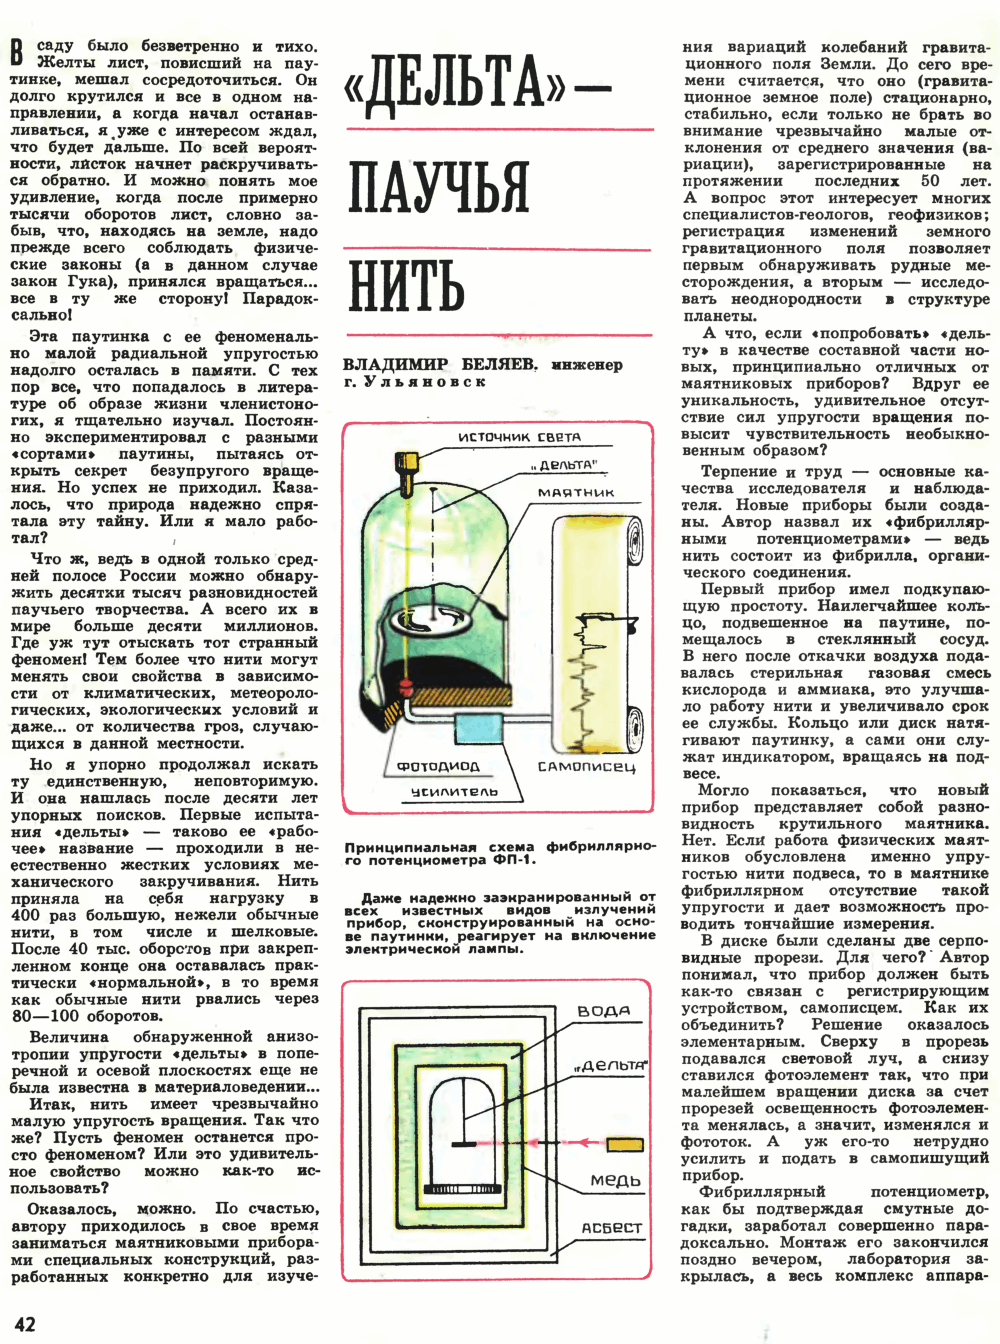 «Дельта» — паучья нить. В. Беляев. Техника — Молодёжи, 1980, №9, с.42-44. Фотокопия №1